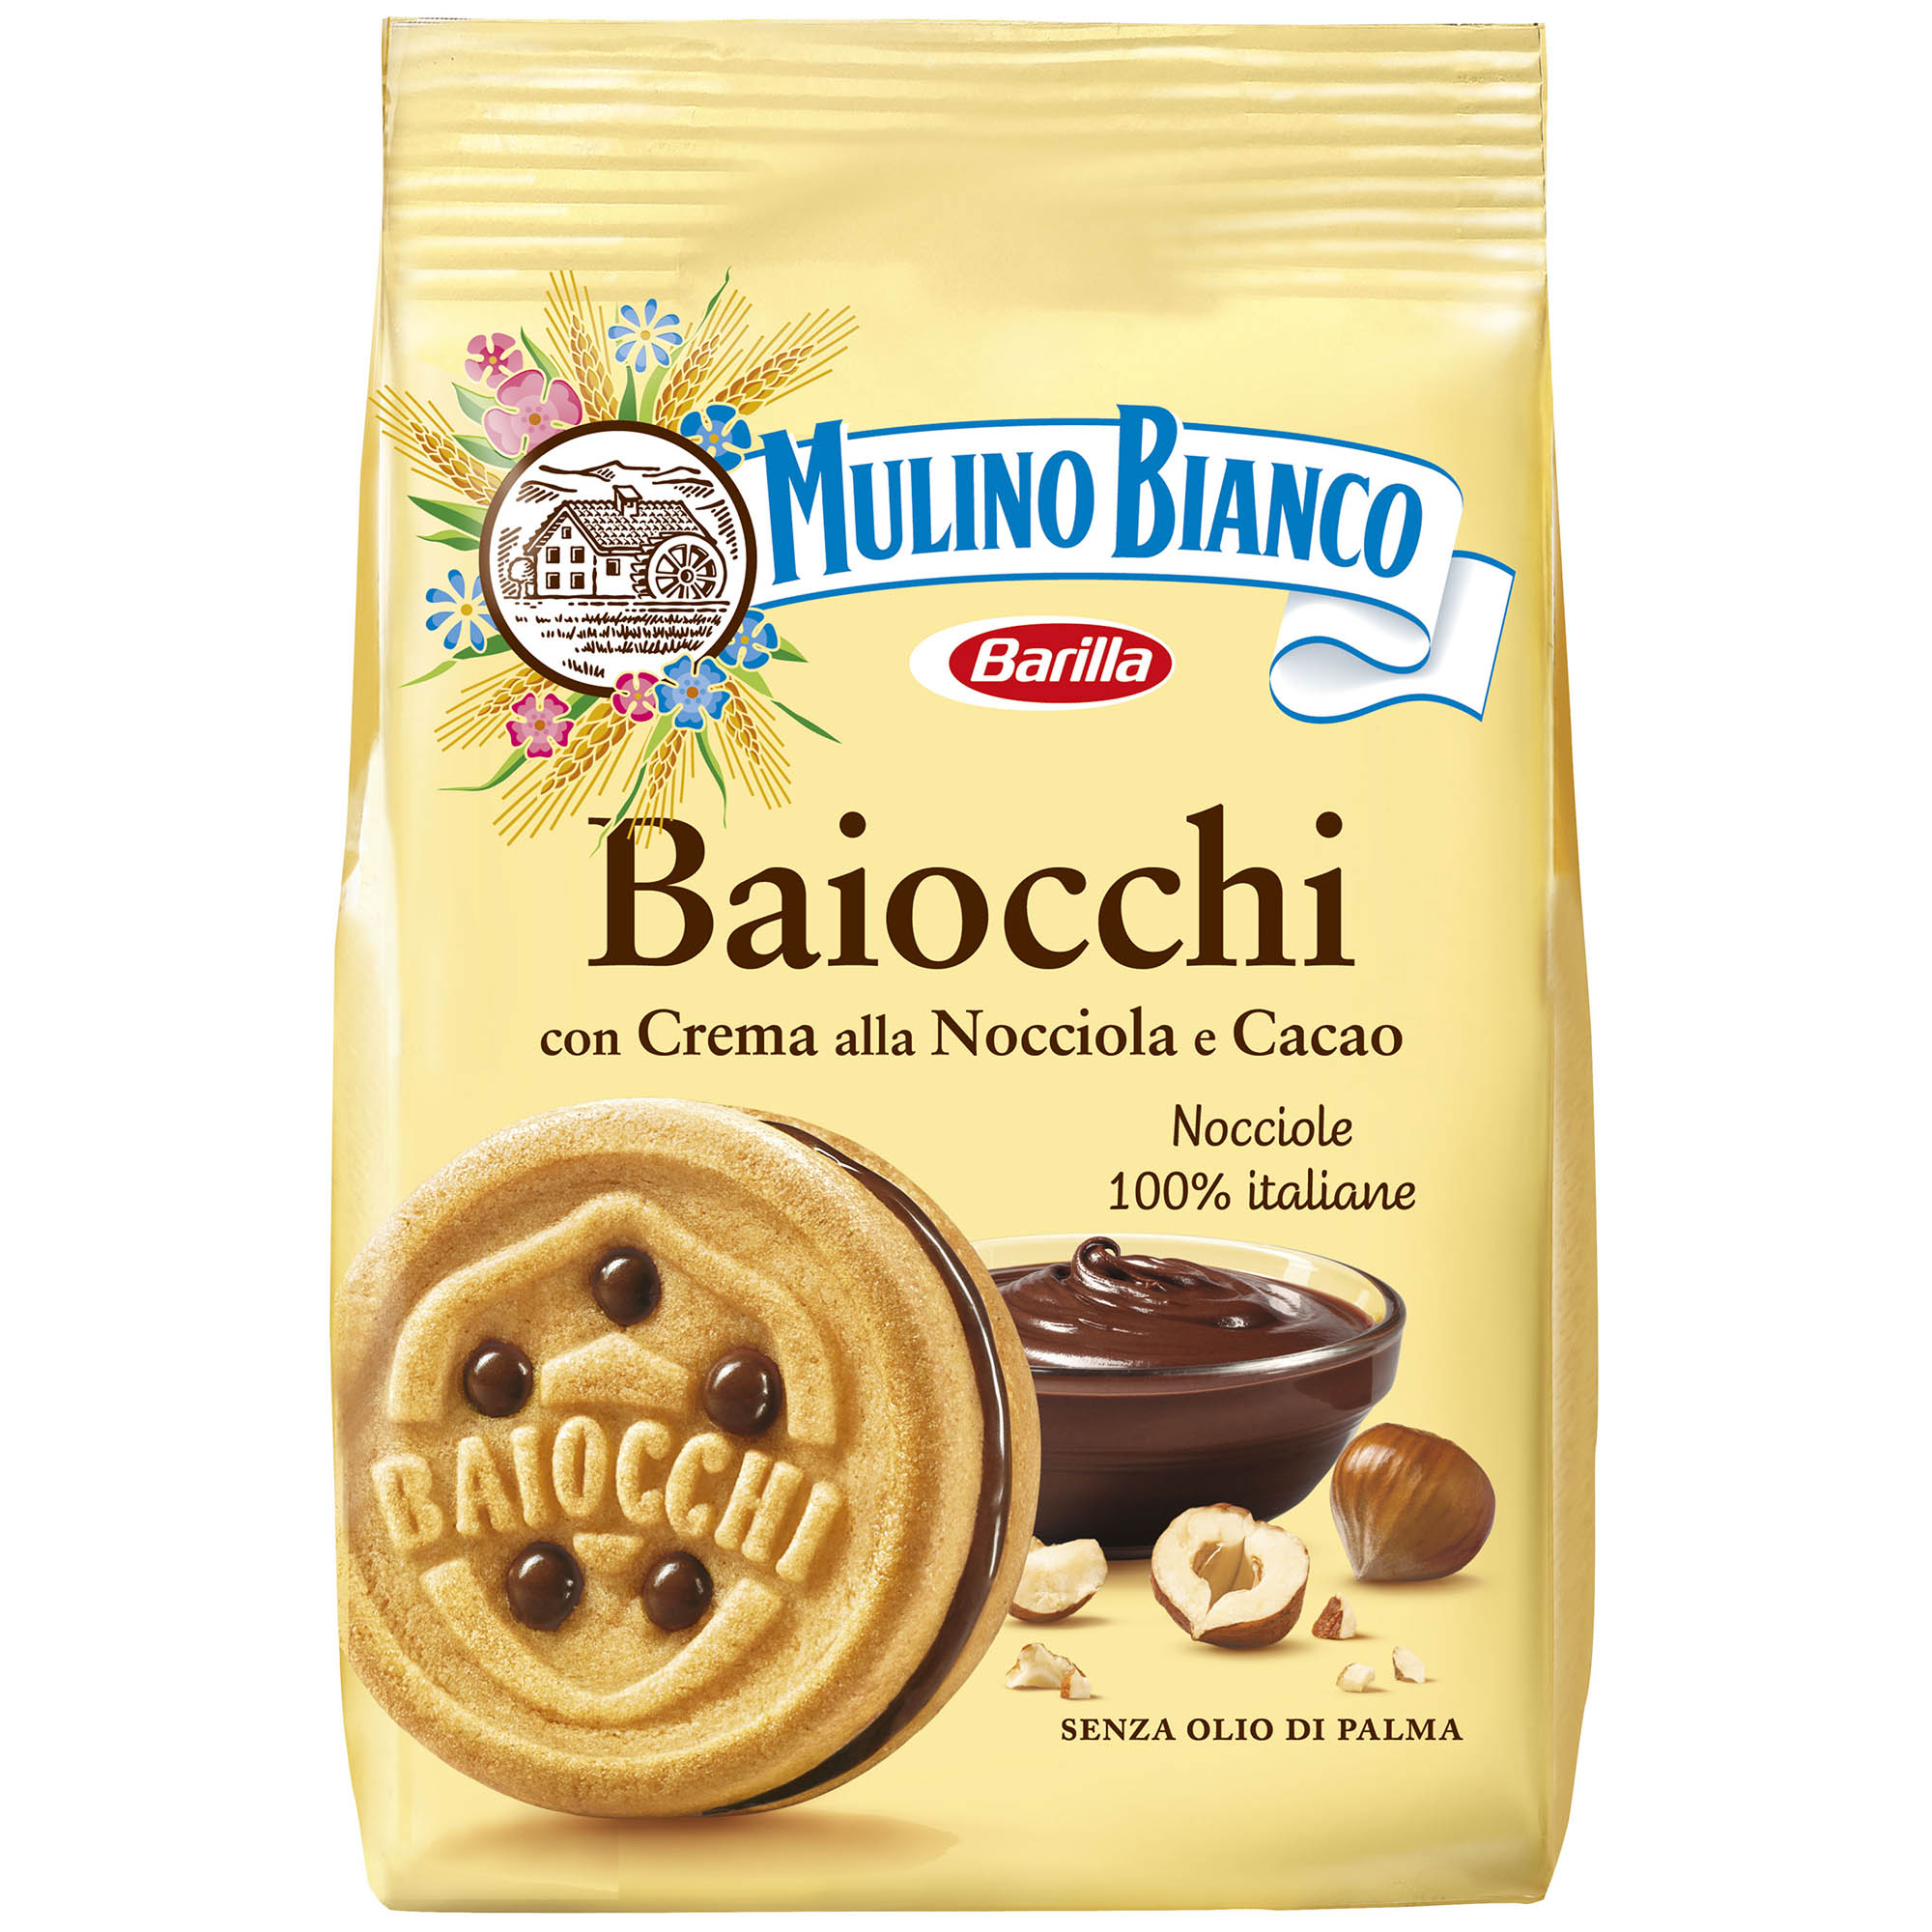 Biscuiti Baiocchi Mulino Bianco